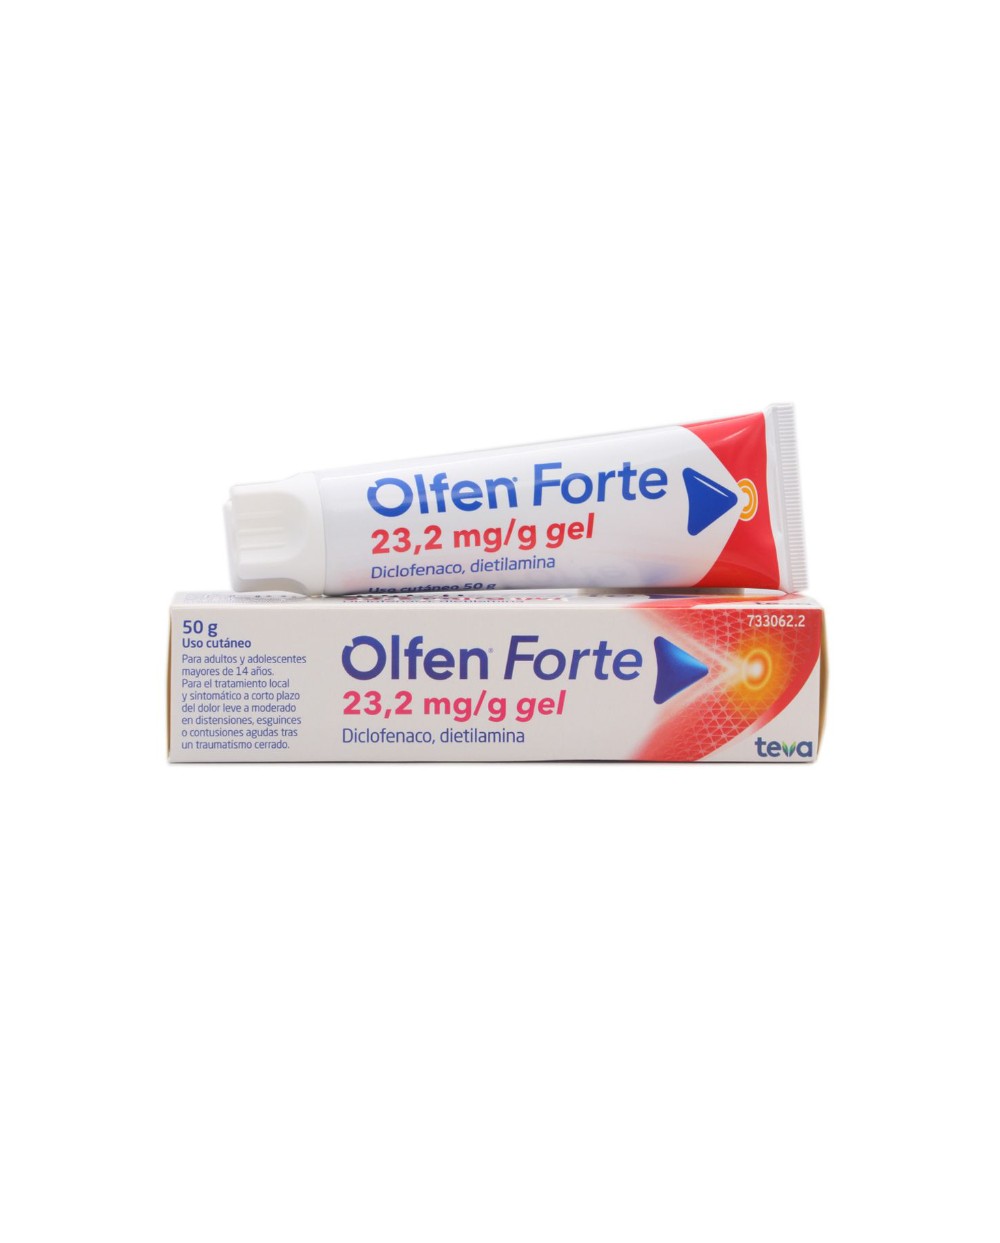 OLFEN FORTE 23,2 mg/g GEL CUTANEO 1 TUBO 100 gr.